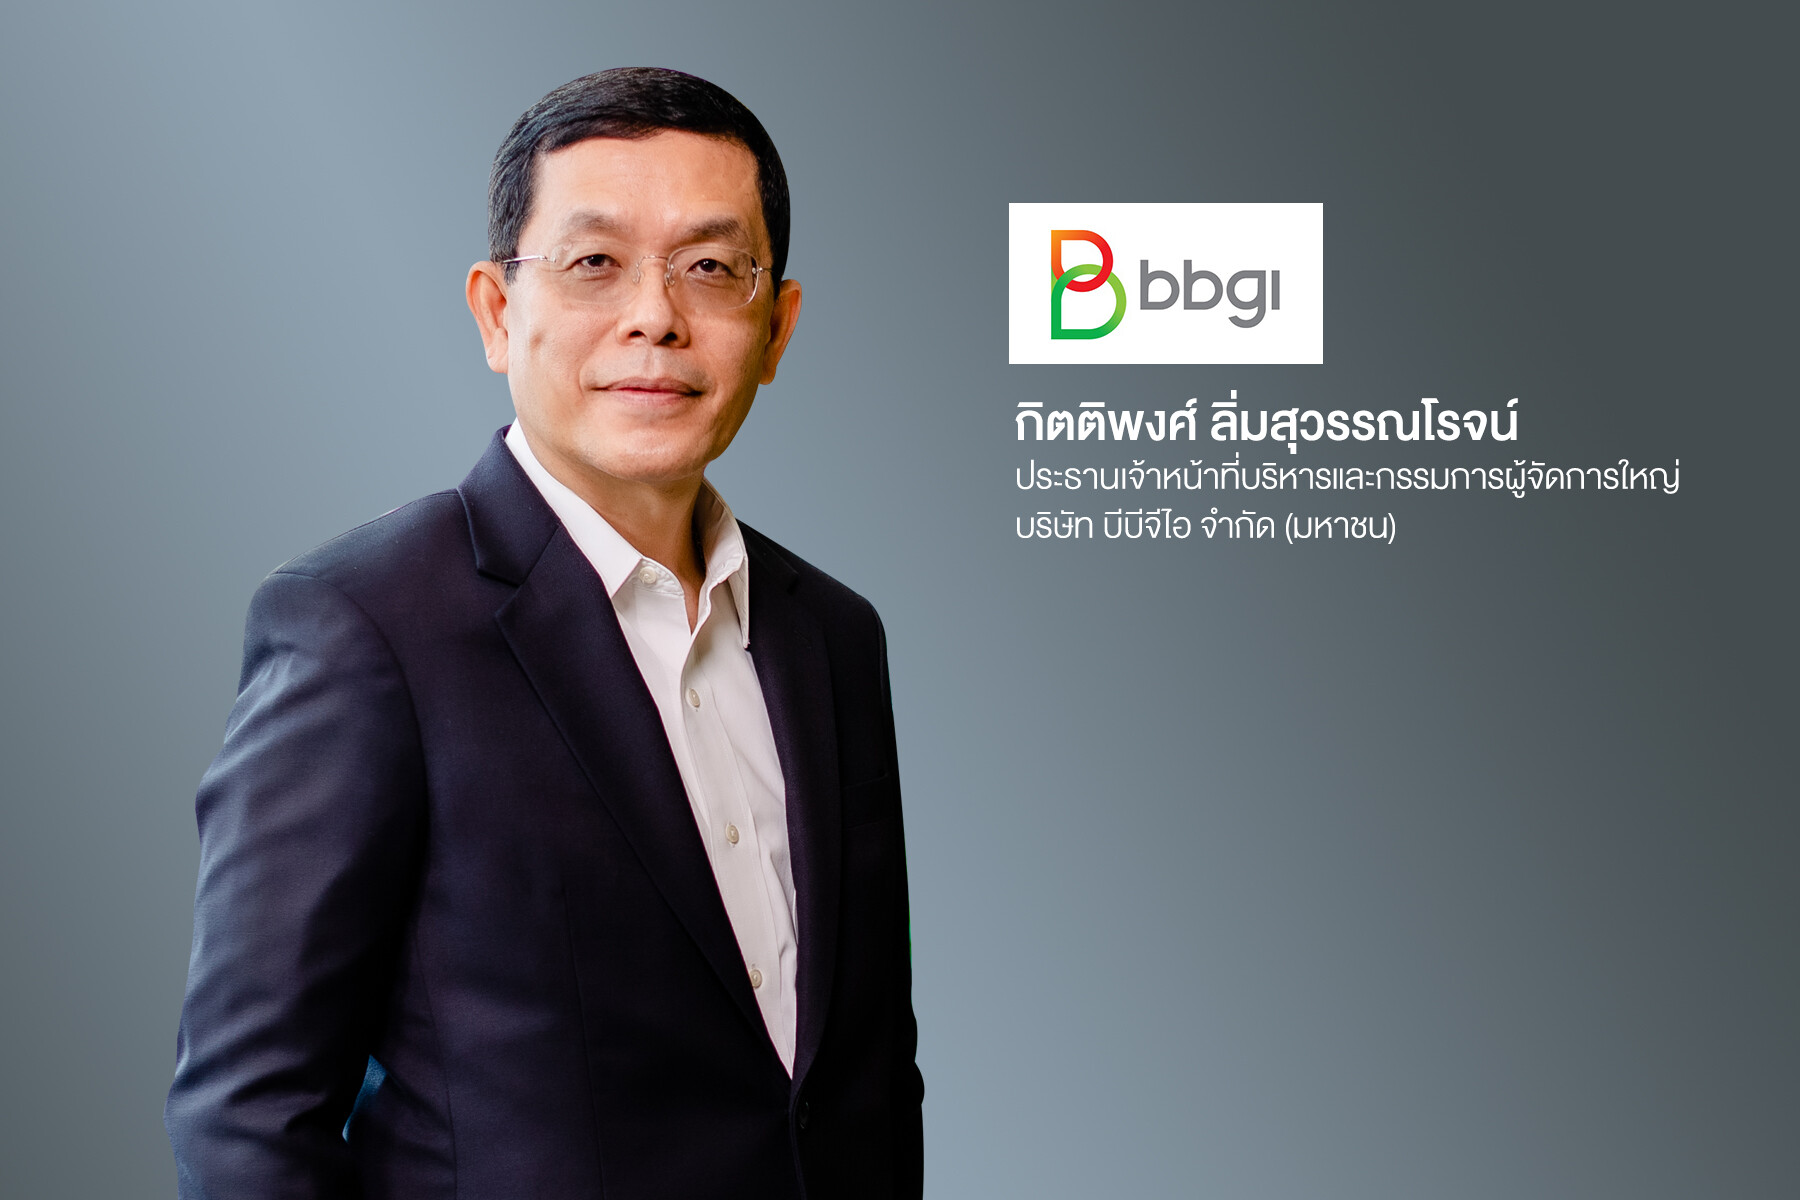 'บมจ.บีบีจีไอ' ผู้นำอุตสาหกรรมพลังงานเชื้อเพลิงชีวภาพ ผู้บุกเบิกธุรกิจผลิตภัณฑ์ชีวภาพมูลค่าสูงที่ส่งเสริมสุขภาพในประเทศไทย ยื่นไฟลิ่งเข้าจดทะเบียนใน SET